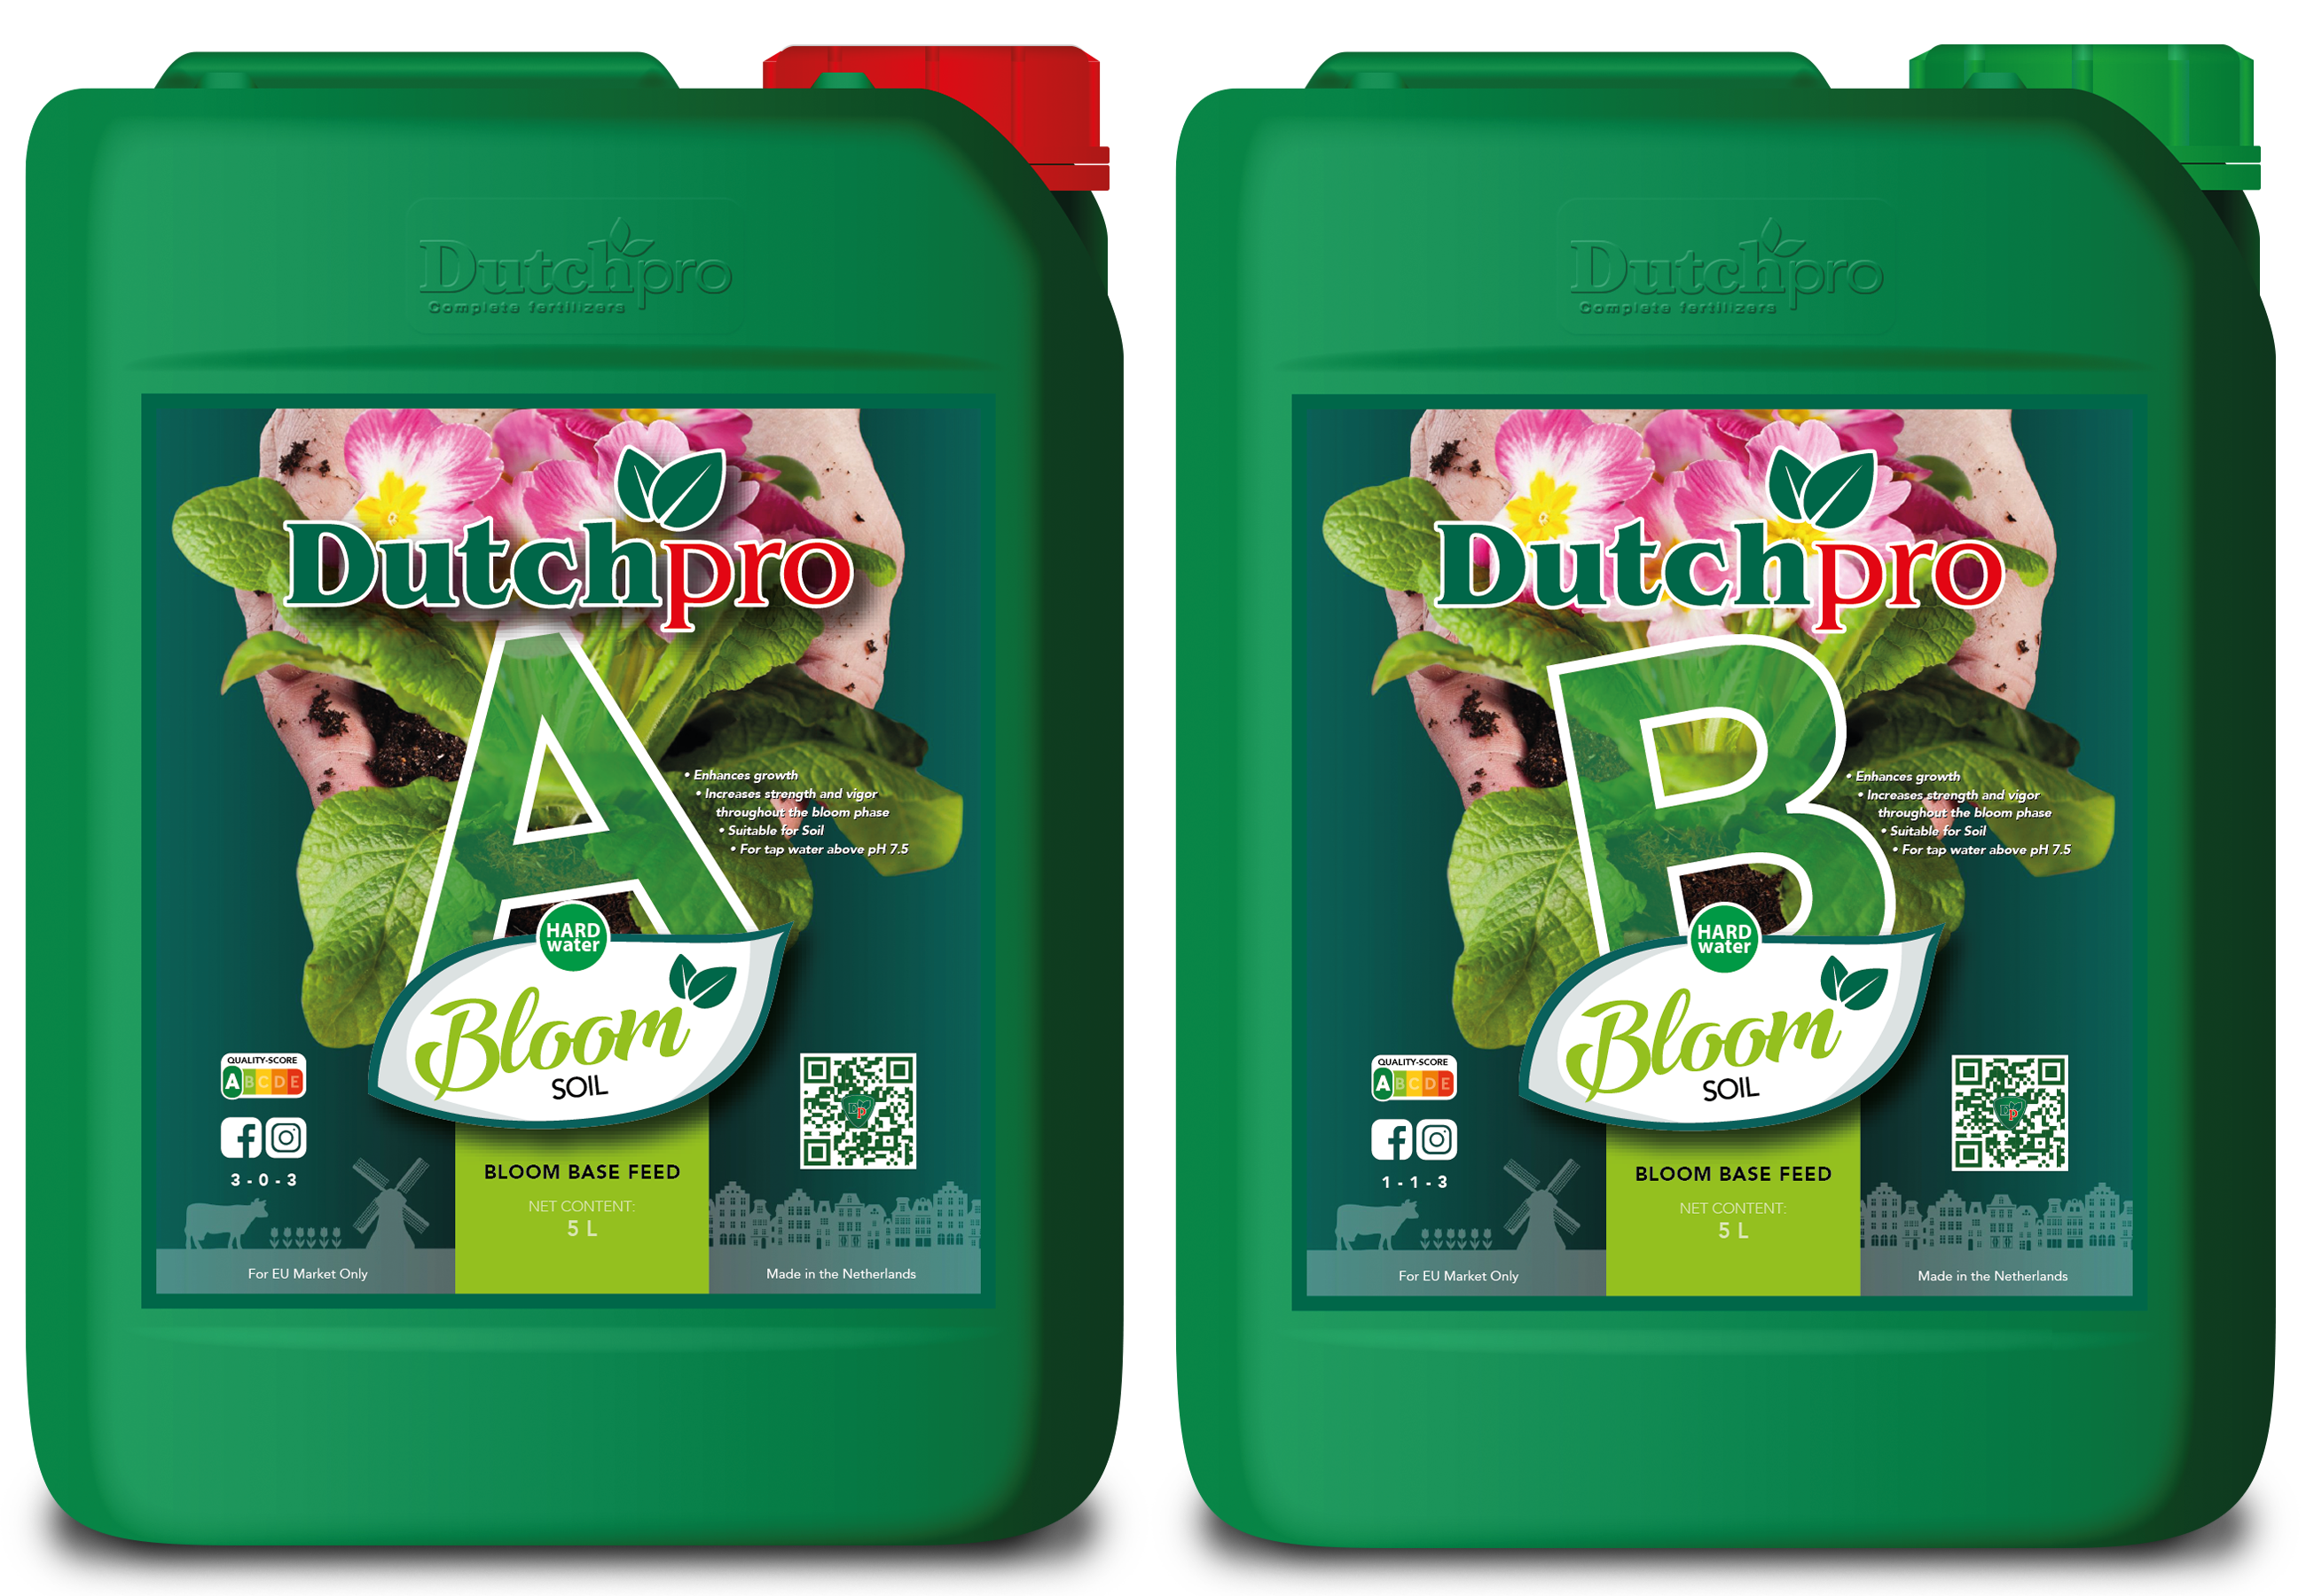 Dutchpro Bloom Soil A&B (Set)